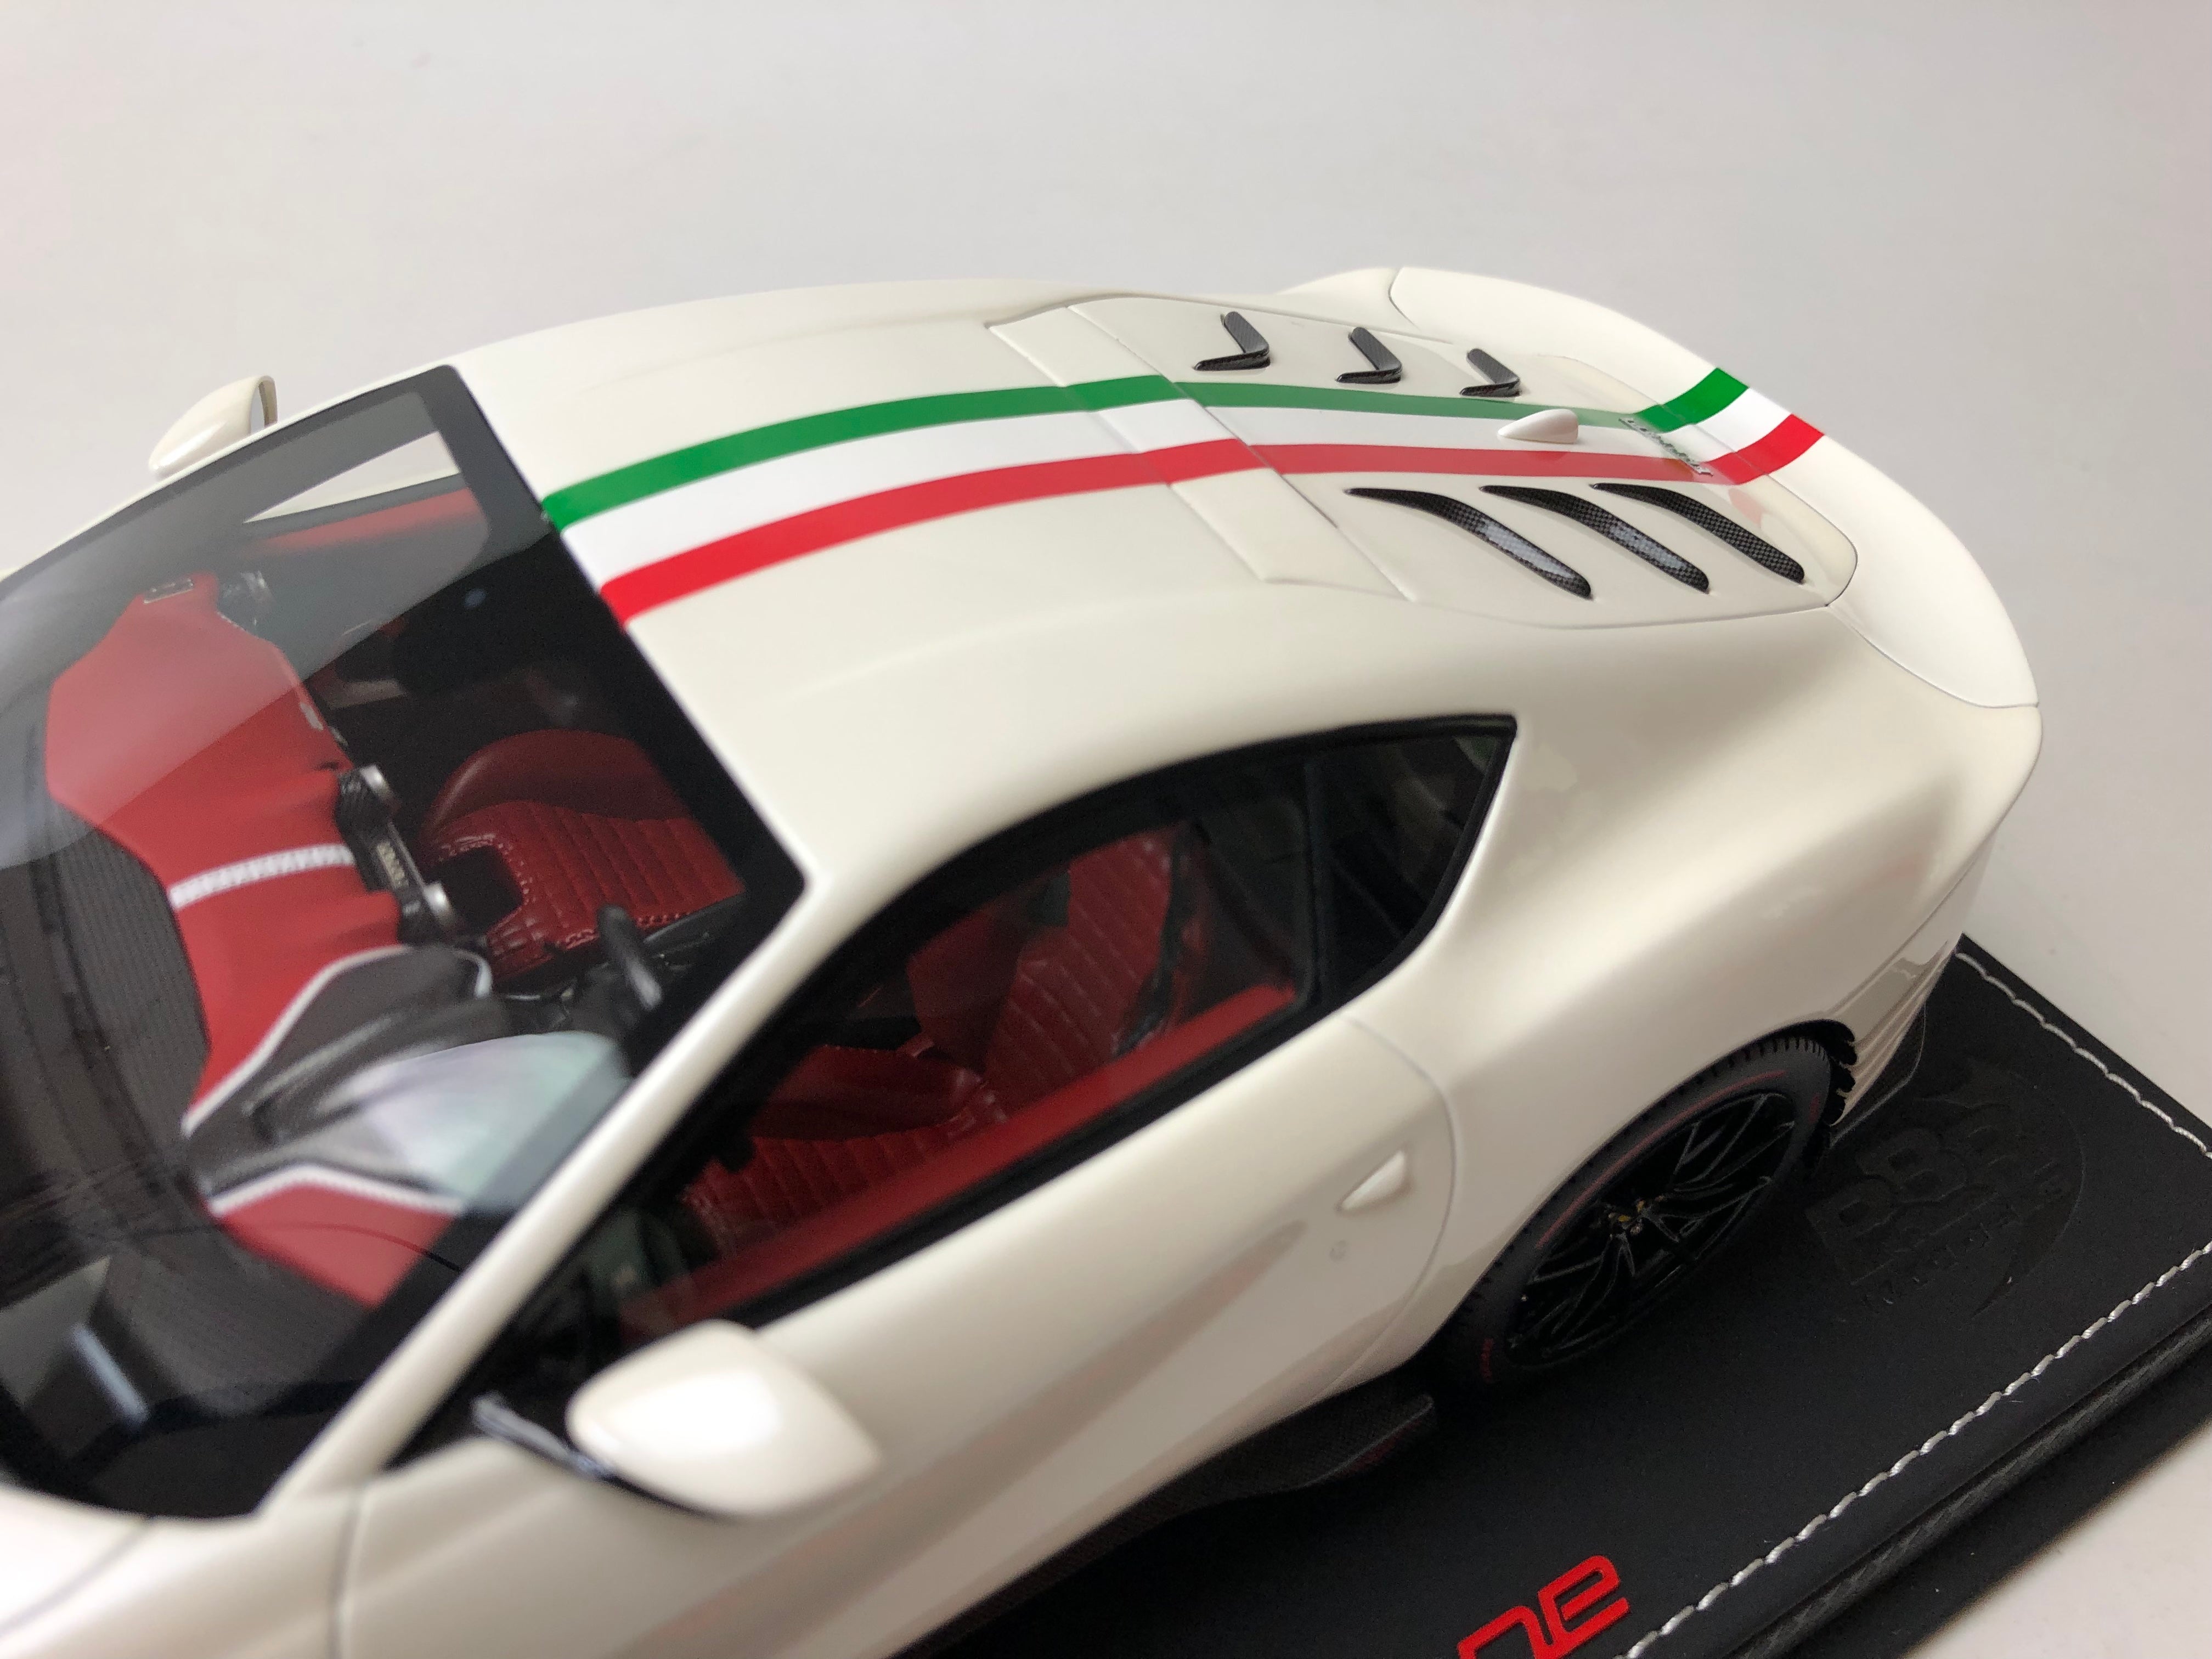 BBR escala 1:18 Ferrari 812 Competizione 2021